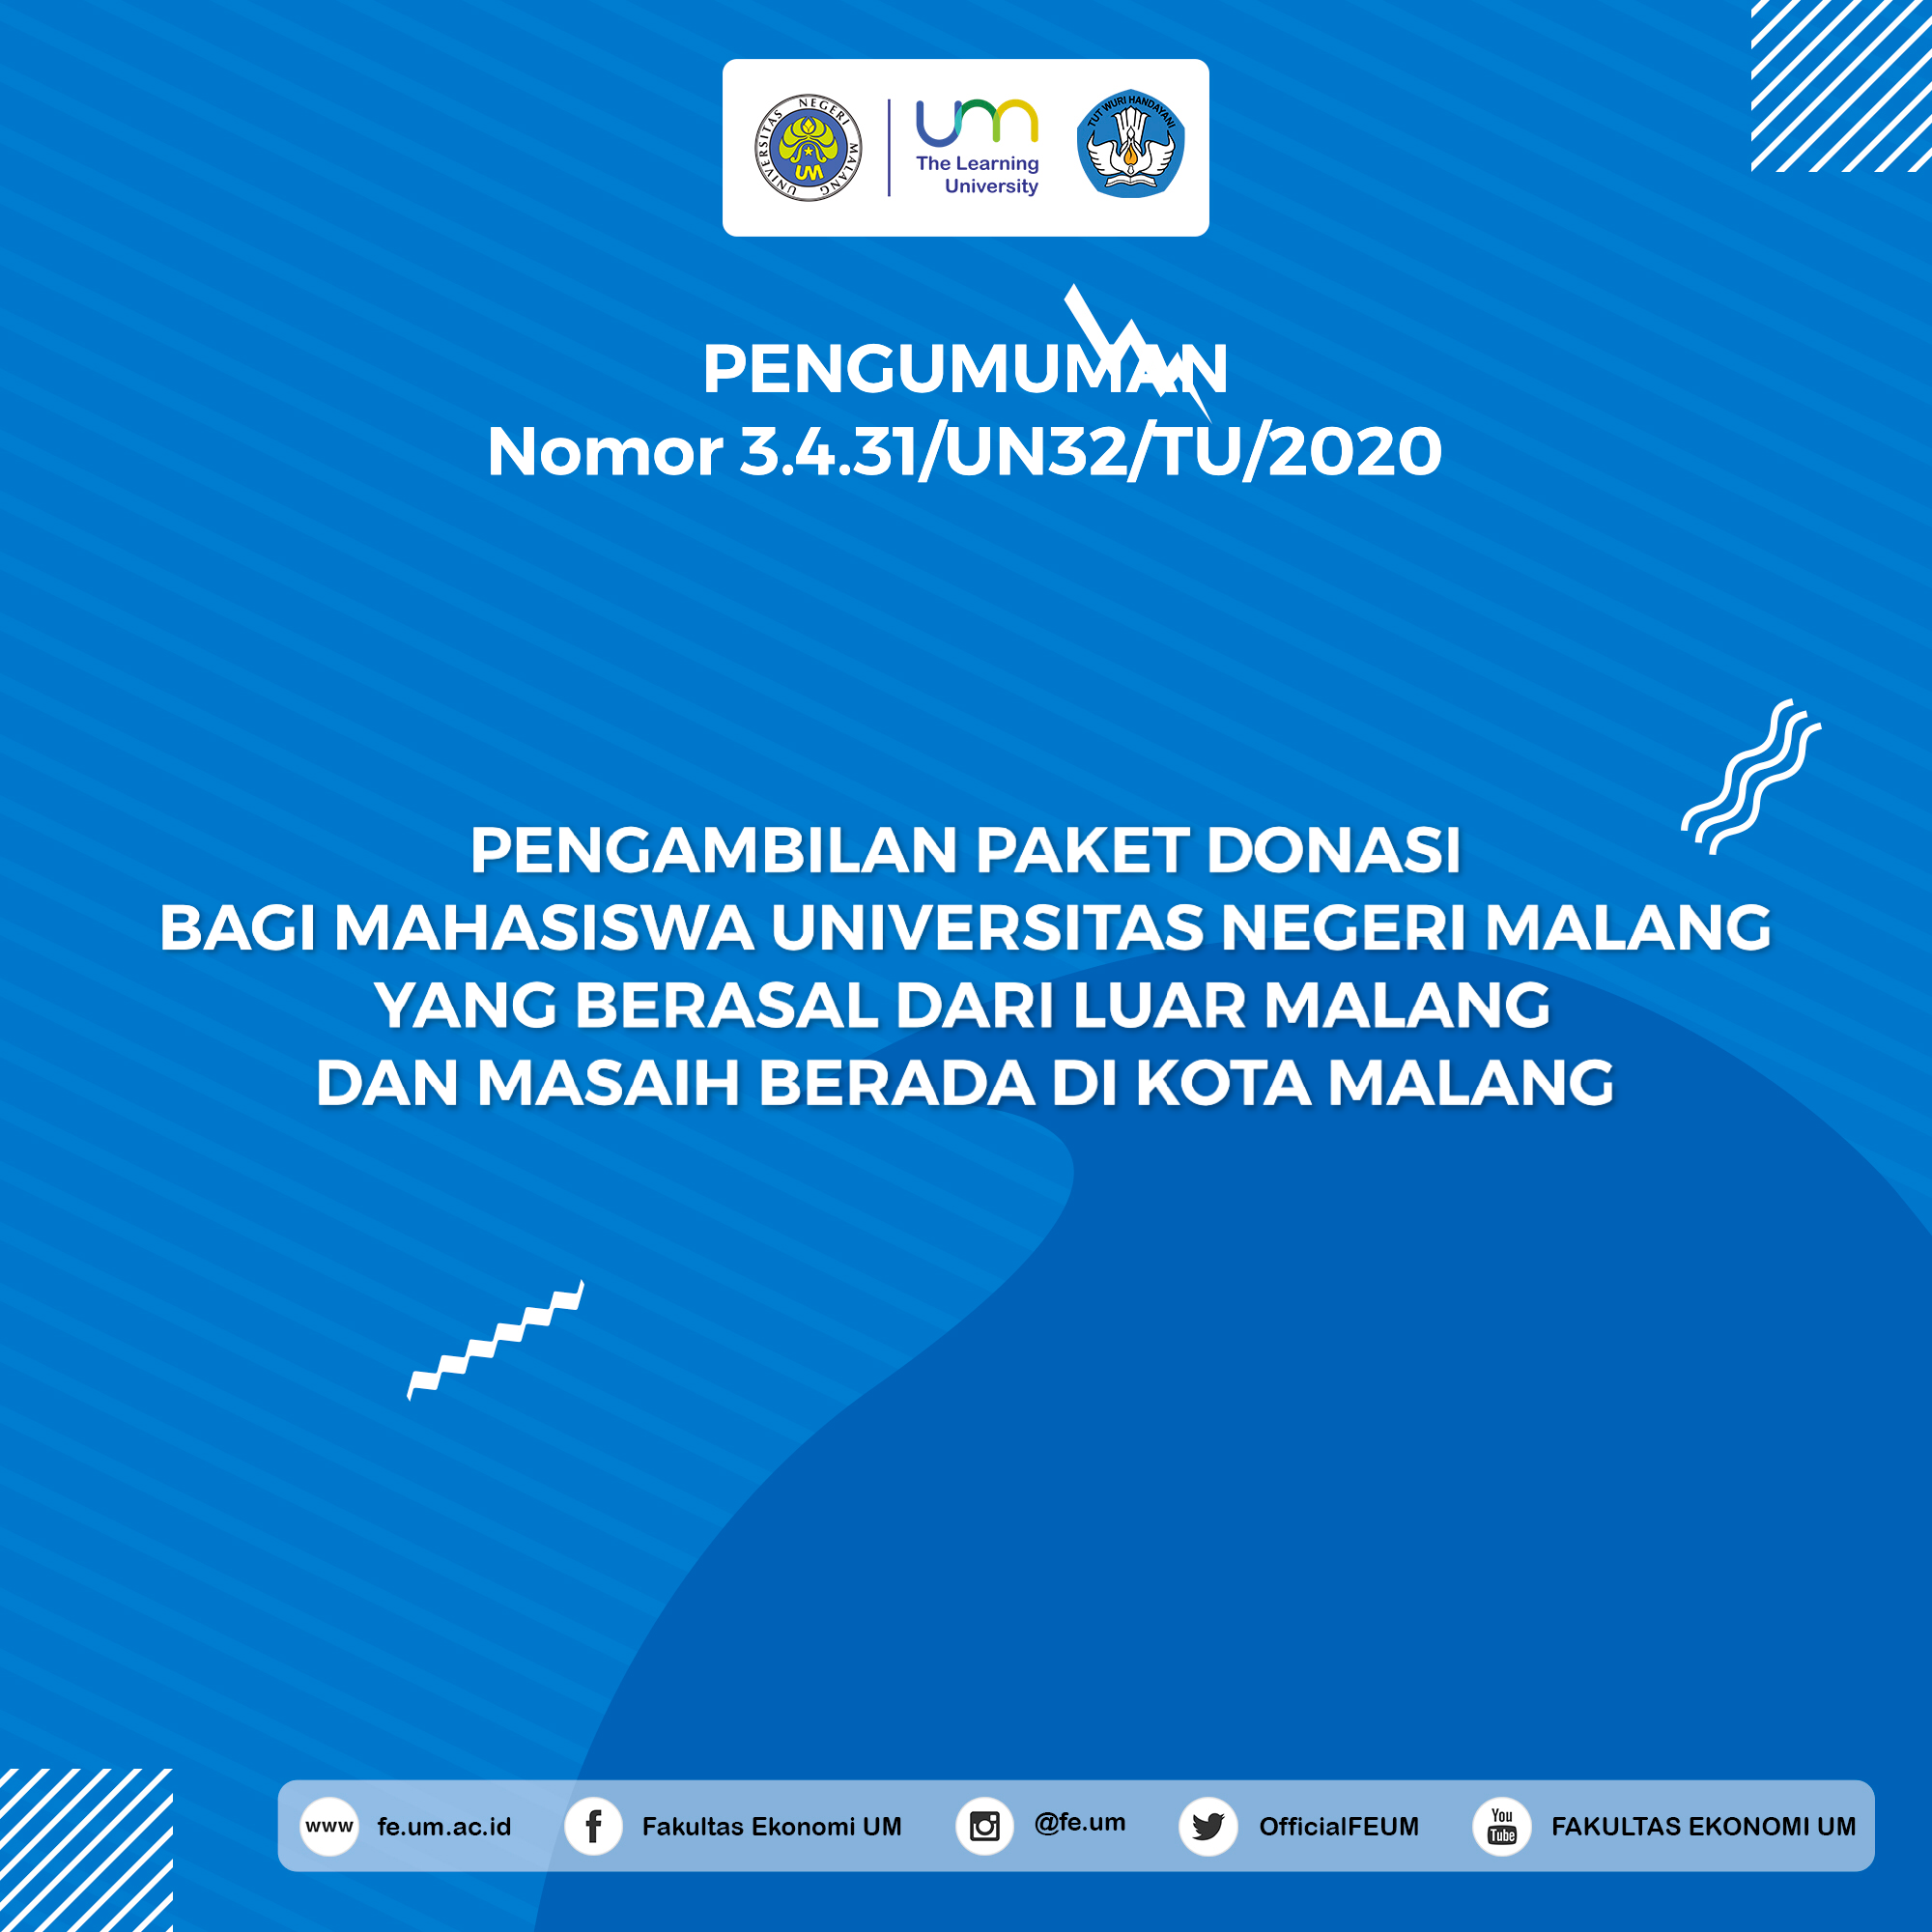 Pengambilan Paket Donasi bagi Mahasiswa Universitas Negeri Malang Yang Berasal dari Luar Kota Malang dan Masih Berada di Kota Malang